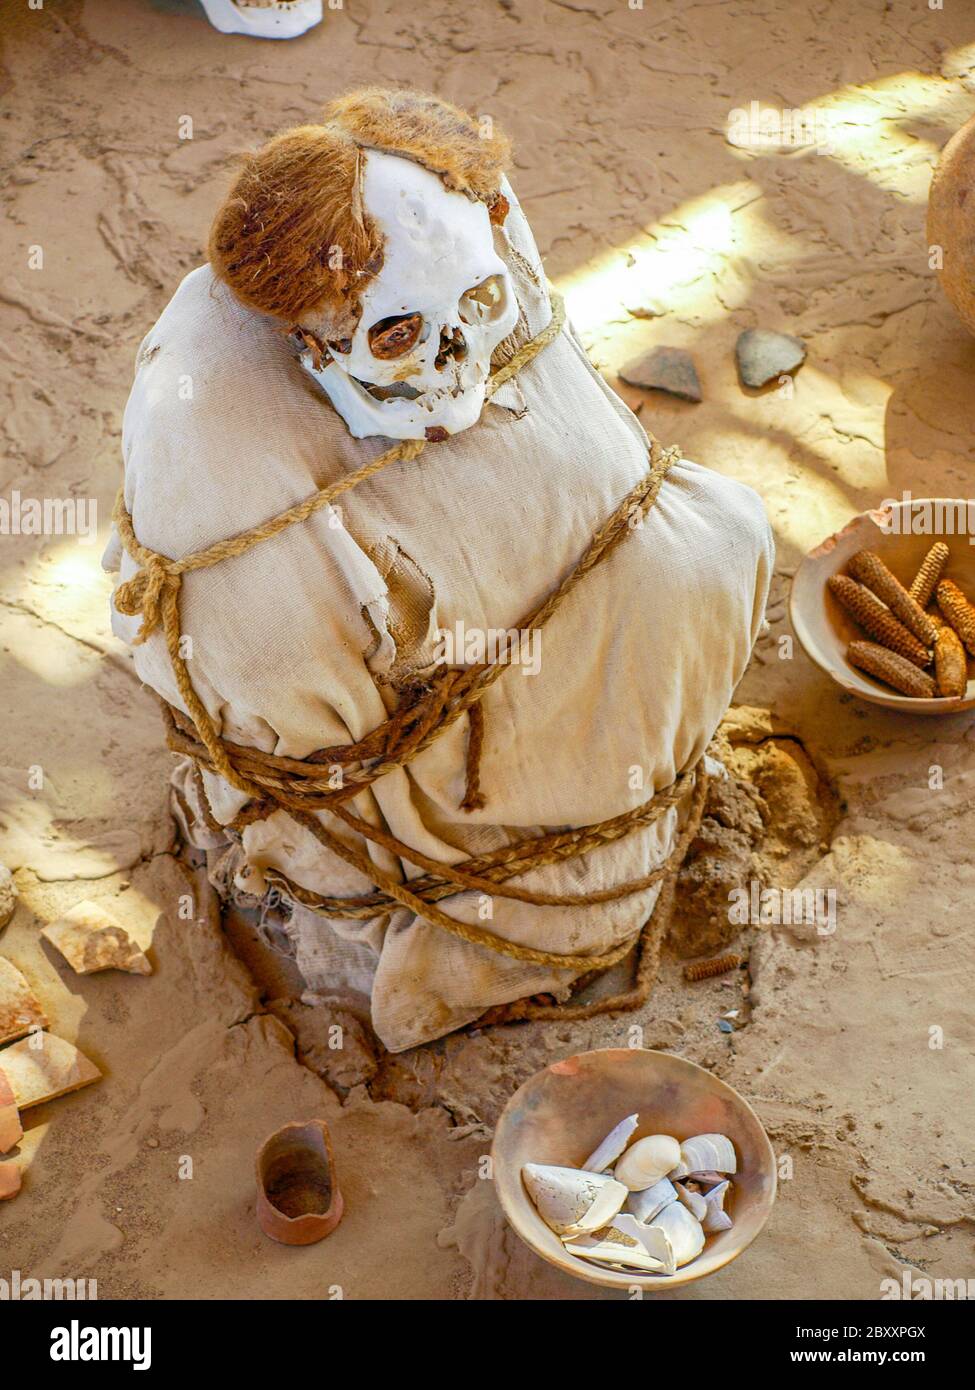 Mummia pre-incan nel sito archeologico di Chauchilla, Nazca, Perù. Foto Stock